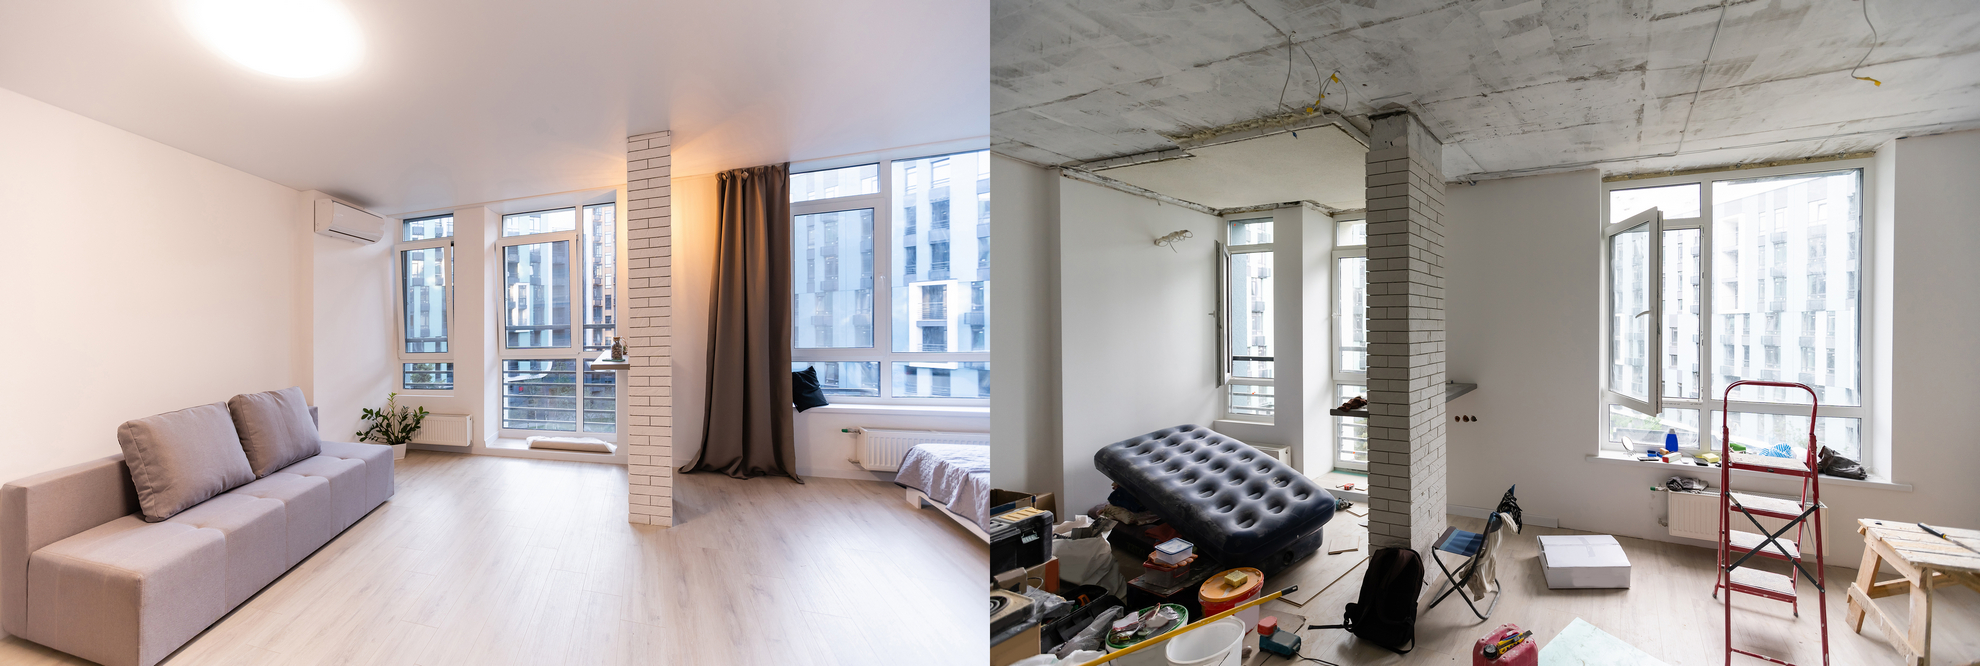 Фото современного ремонта квартиры до и после